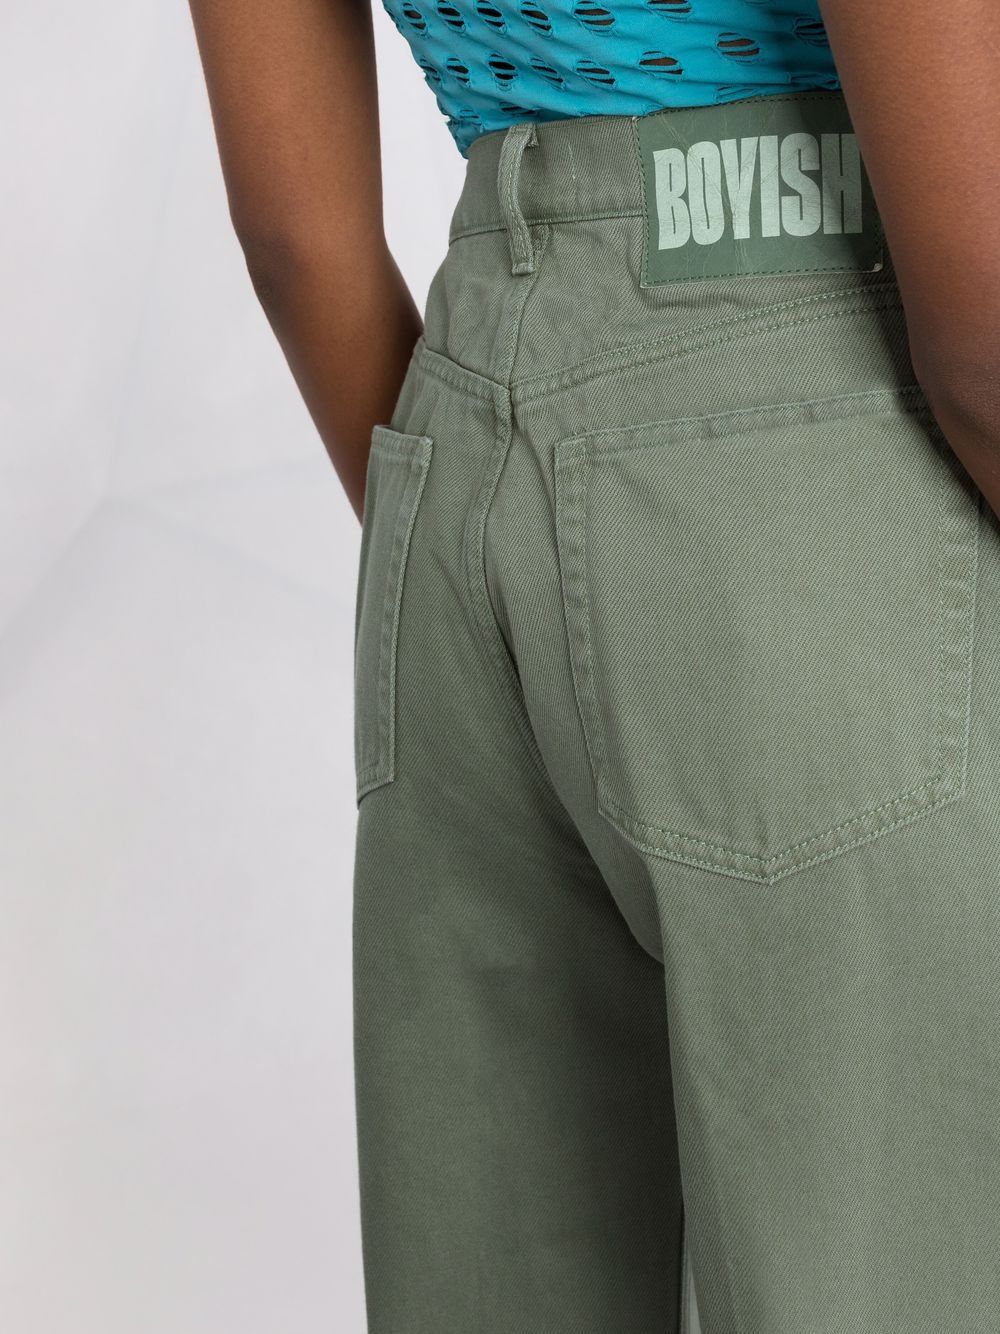 Boyish BOYISH- High Waist Denim Jeans